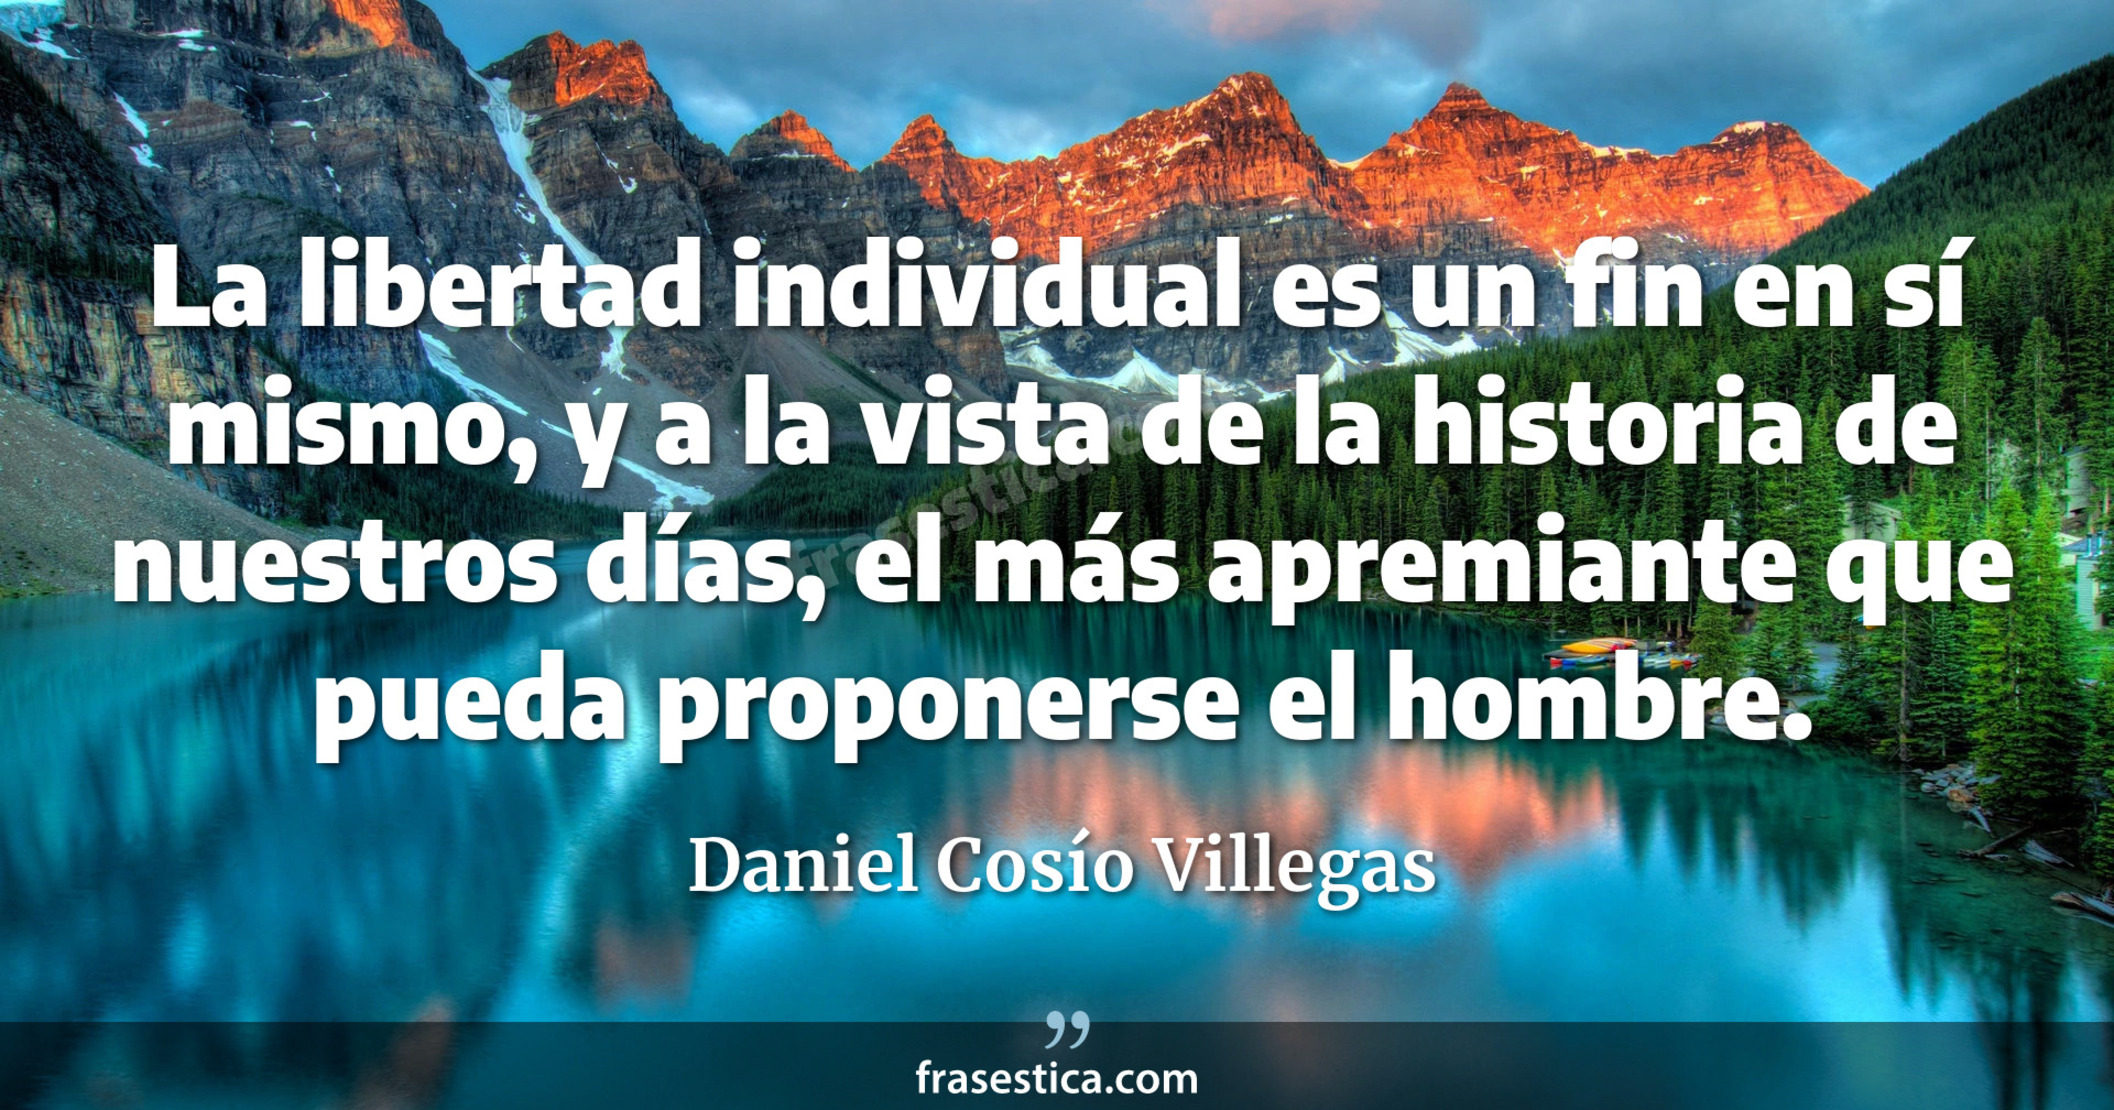 La libertad individual es un fin en sí mismo, y a la vista de la historia de nuestros días, el más apremiante que pueda proponerse el hombre. - Daniel Cosío Villegas